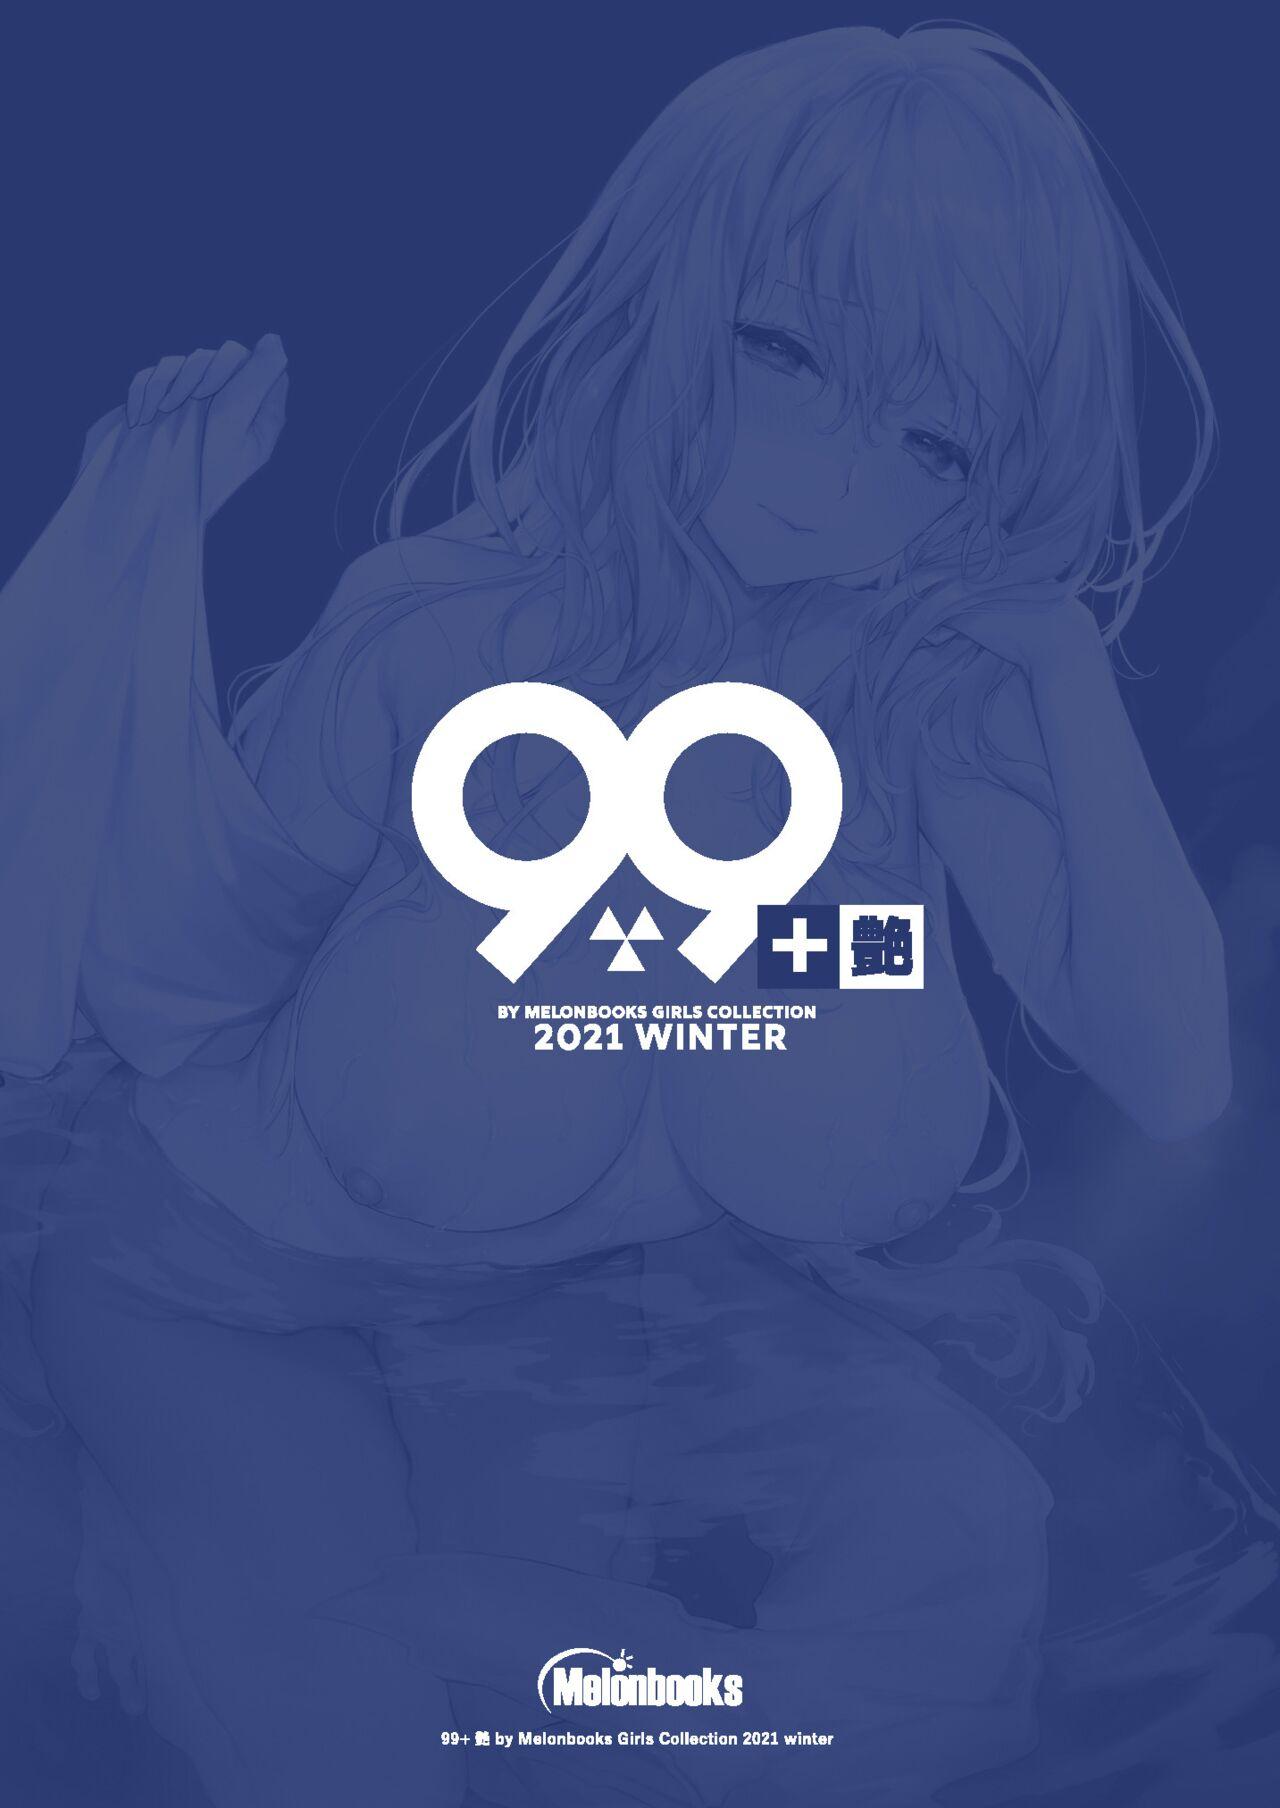 99+ 艶 by Melonbooks Girls Collection 2021 winter 85